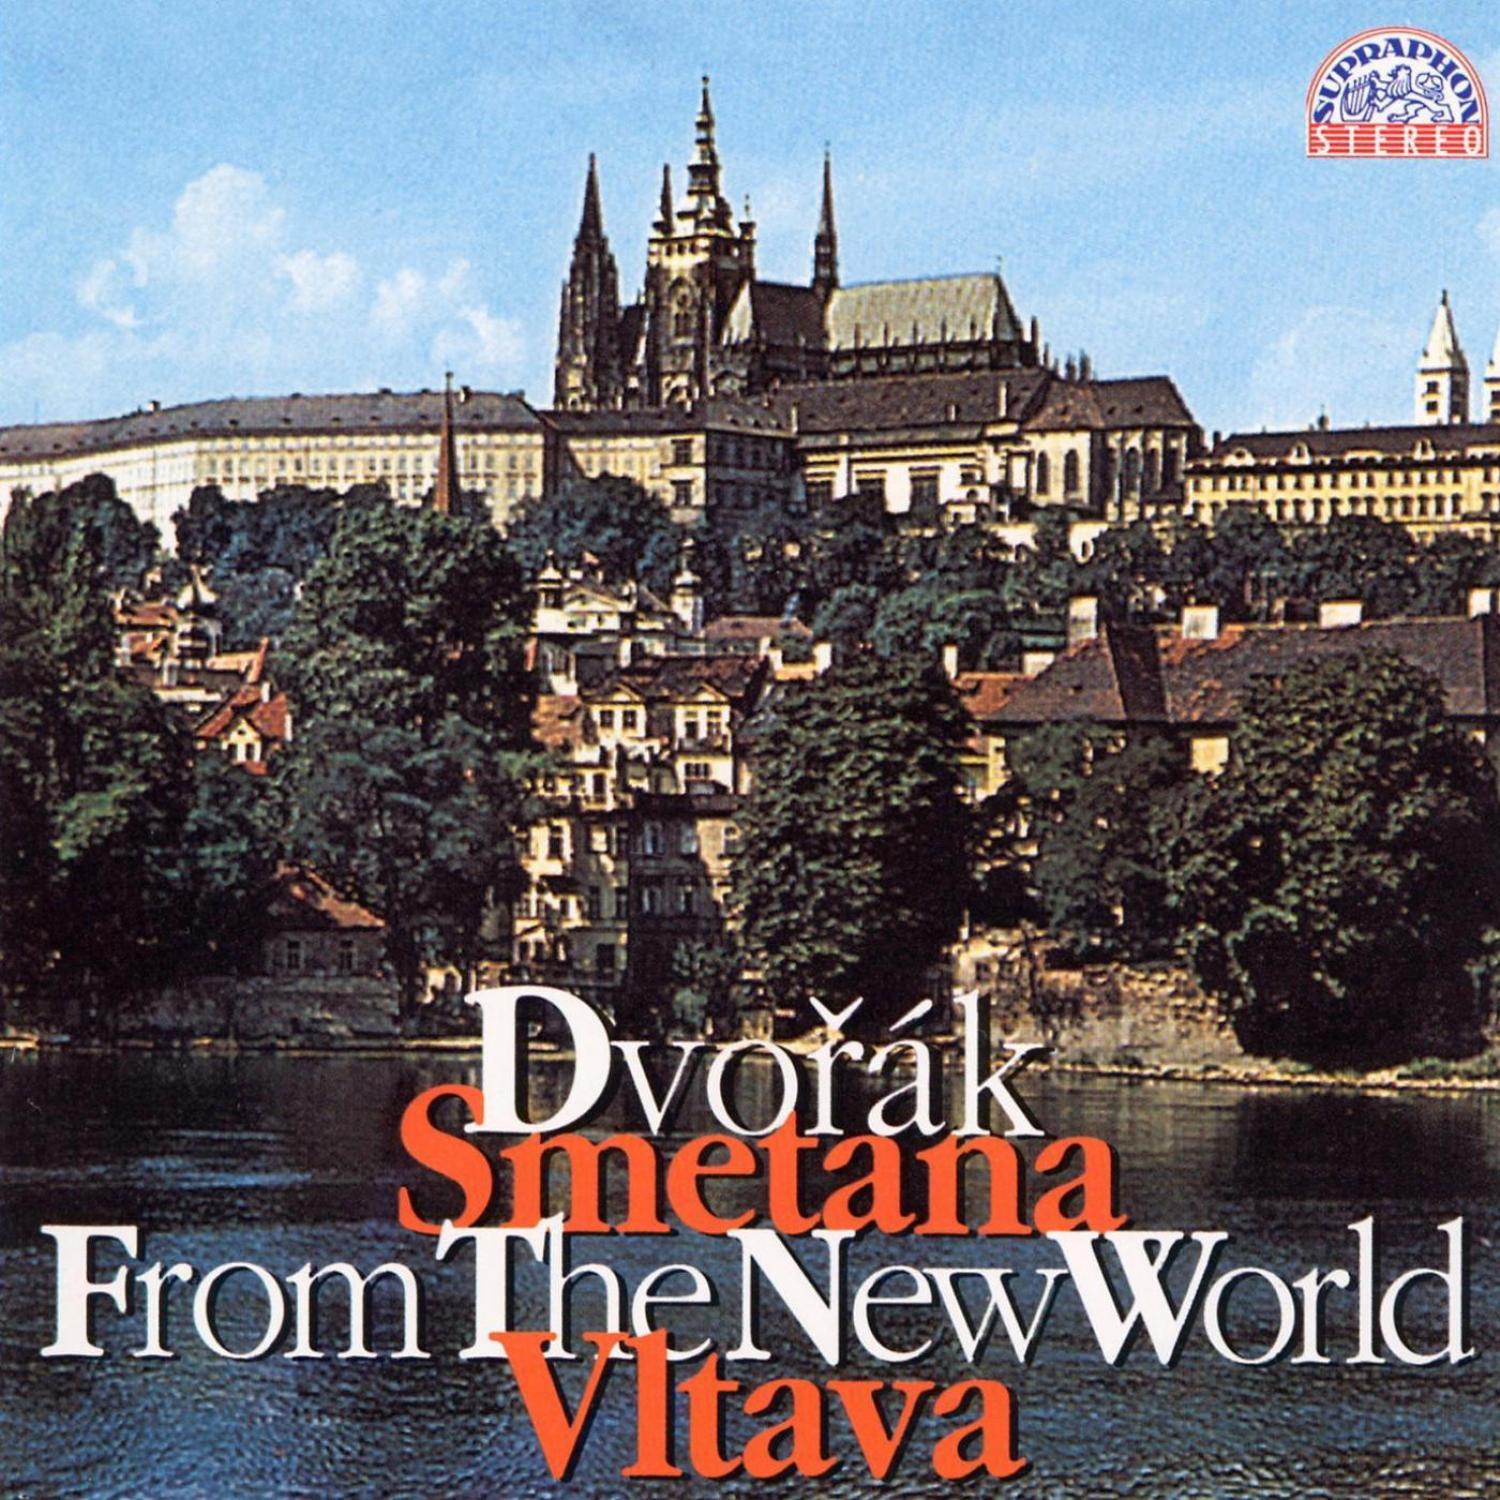 Dvořák: Symphony No. 9 "From the New World", Vltava